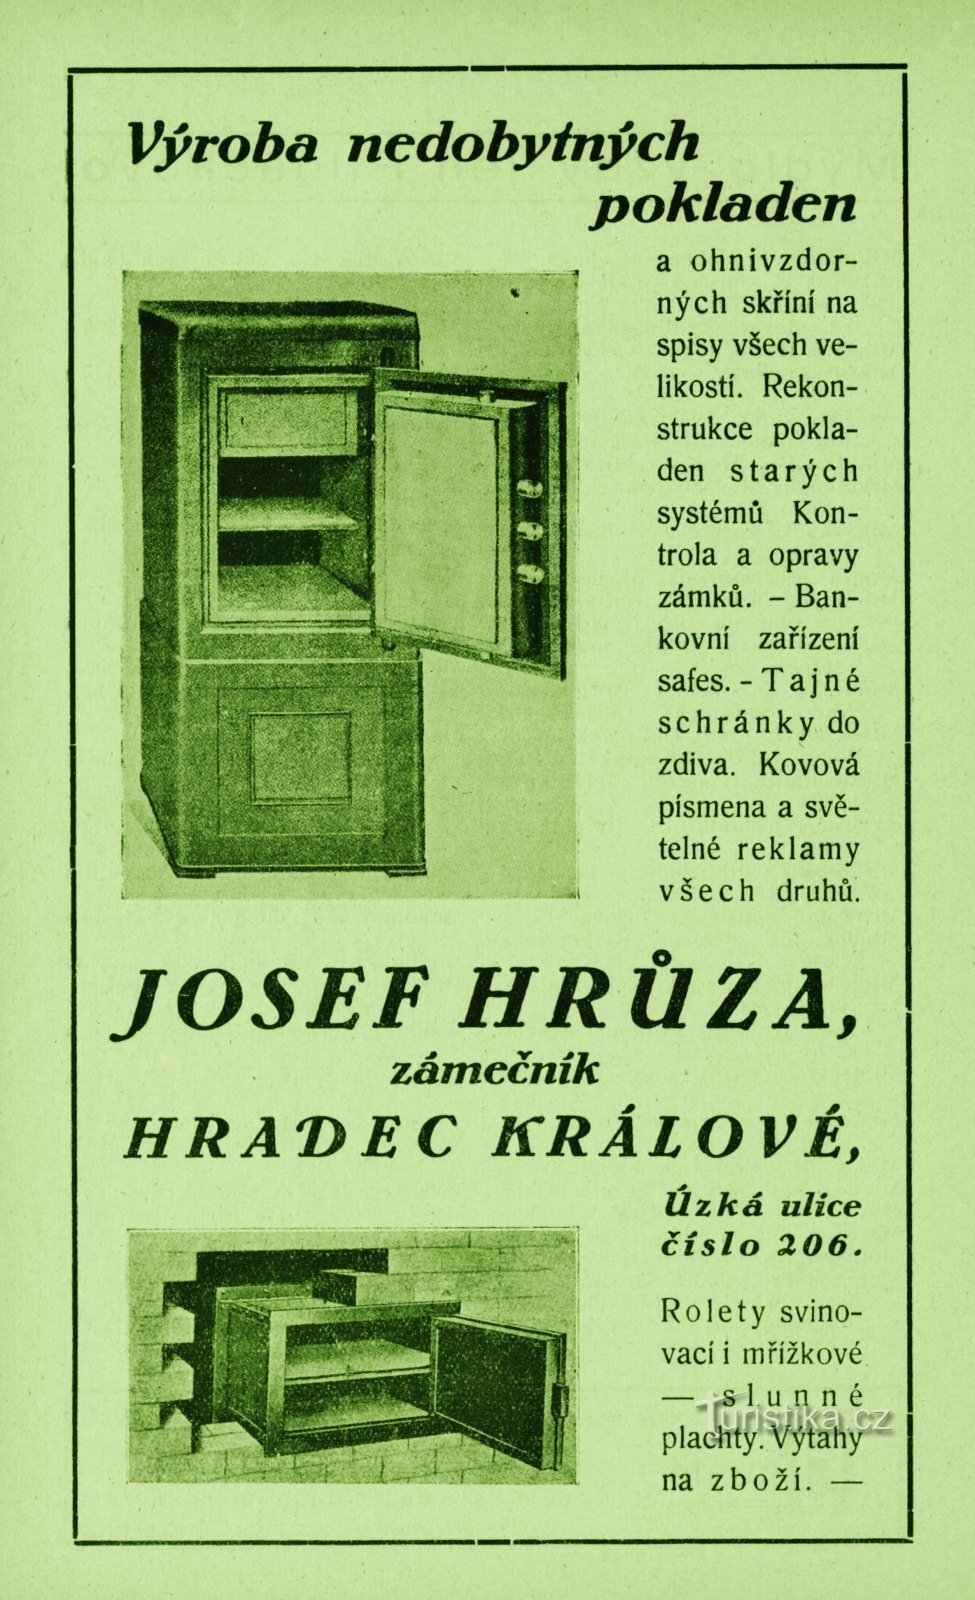 Anuncio contemporáneo del taller de cerrajería de Josef Hrůza de 1931